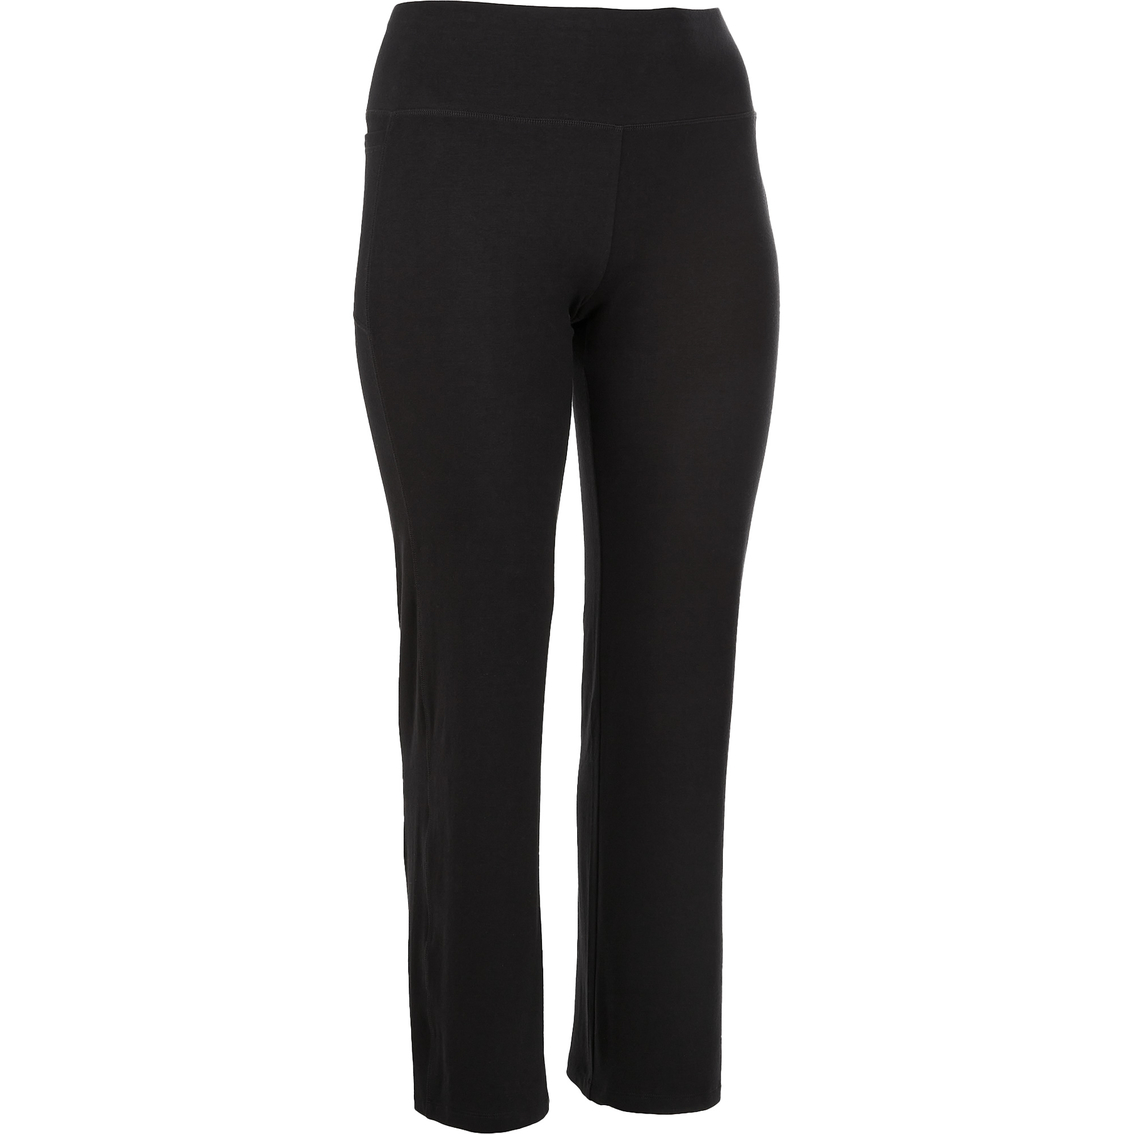 Pbx Pro Cotton Pocket Pants | Pants & Capris | Clothing & Accessories ...